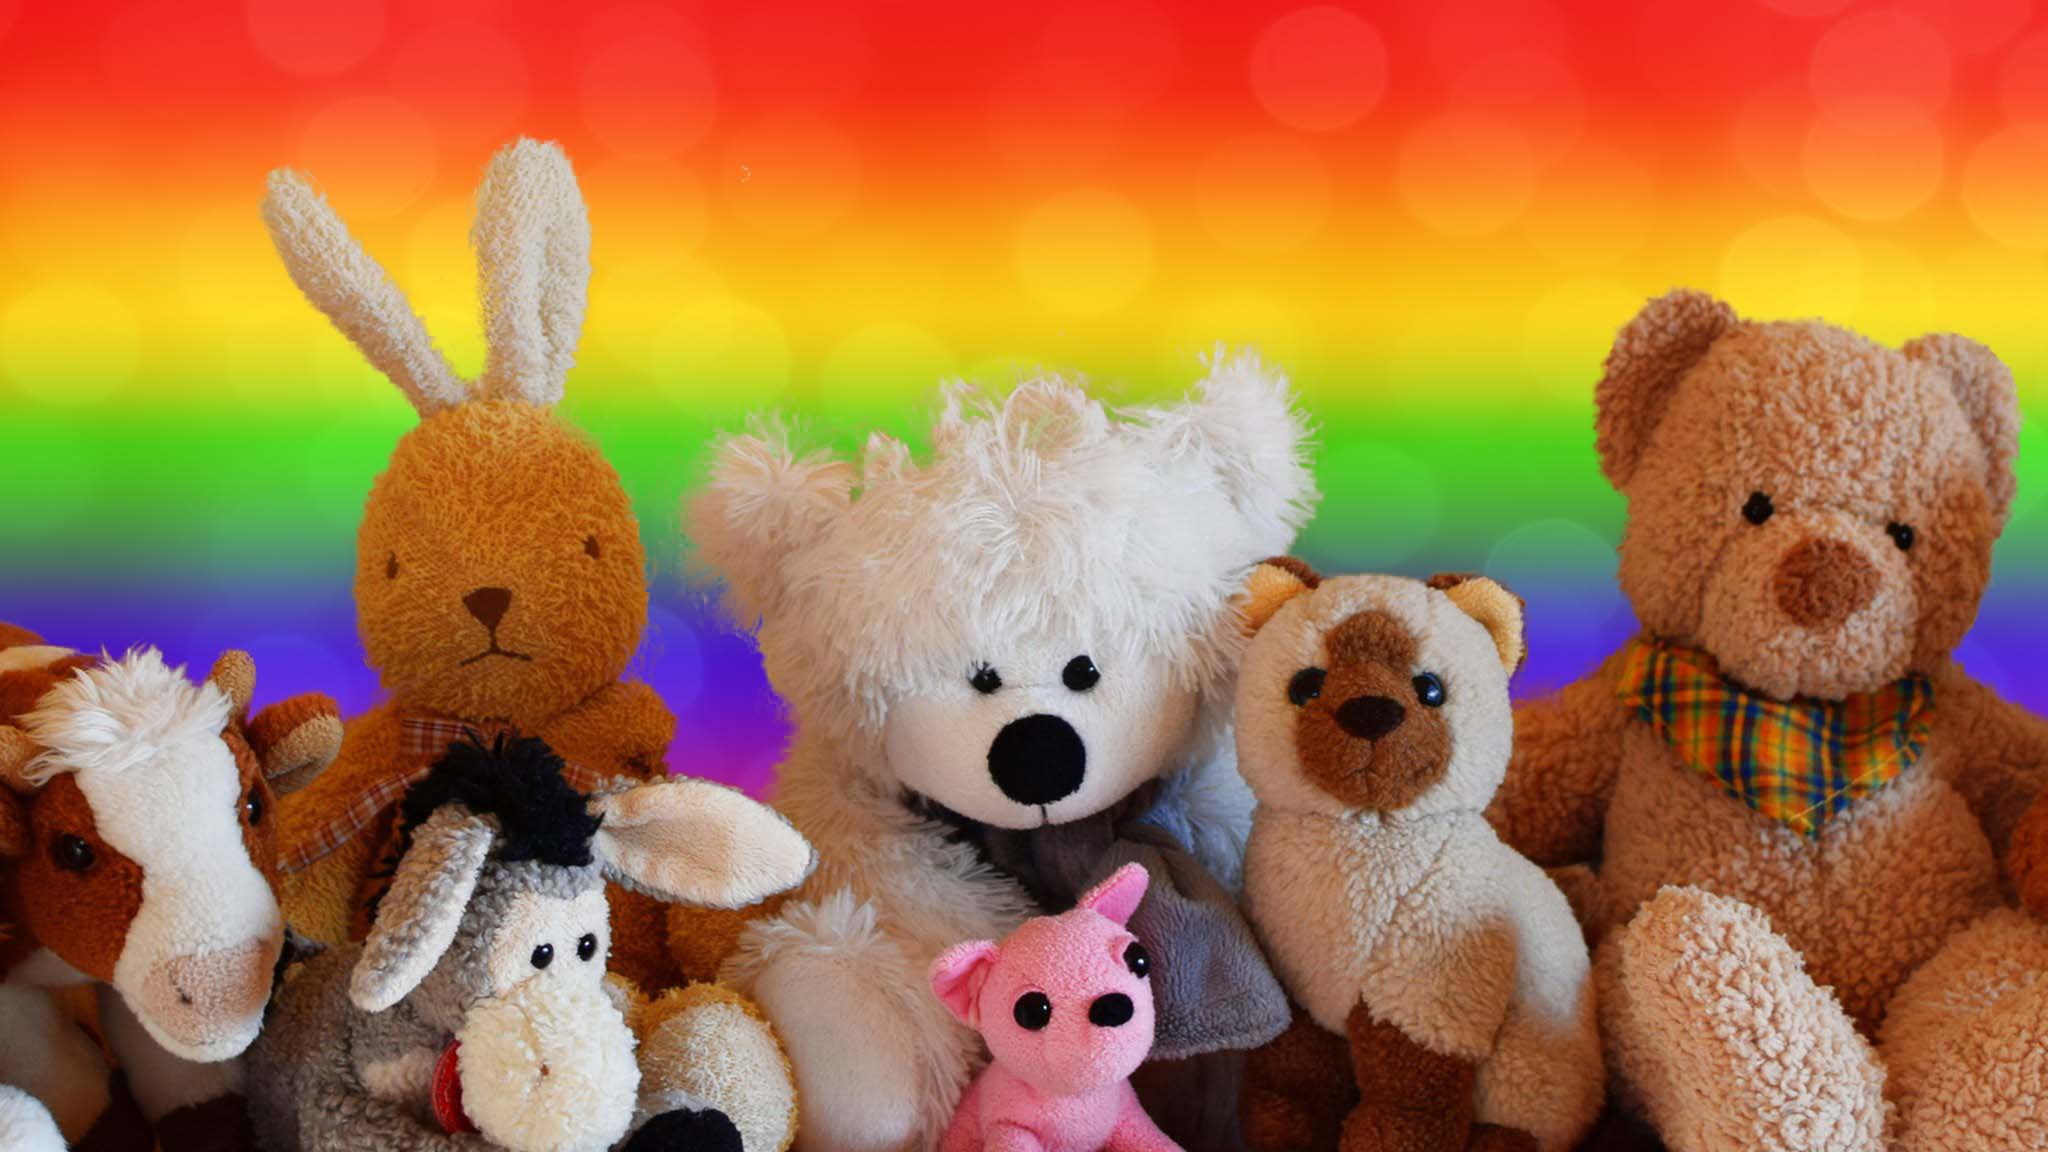 huge rainbow teddy bear